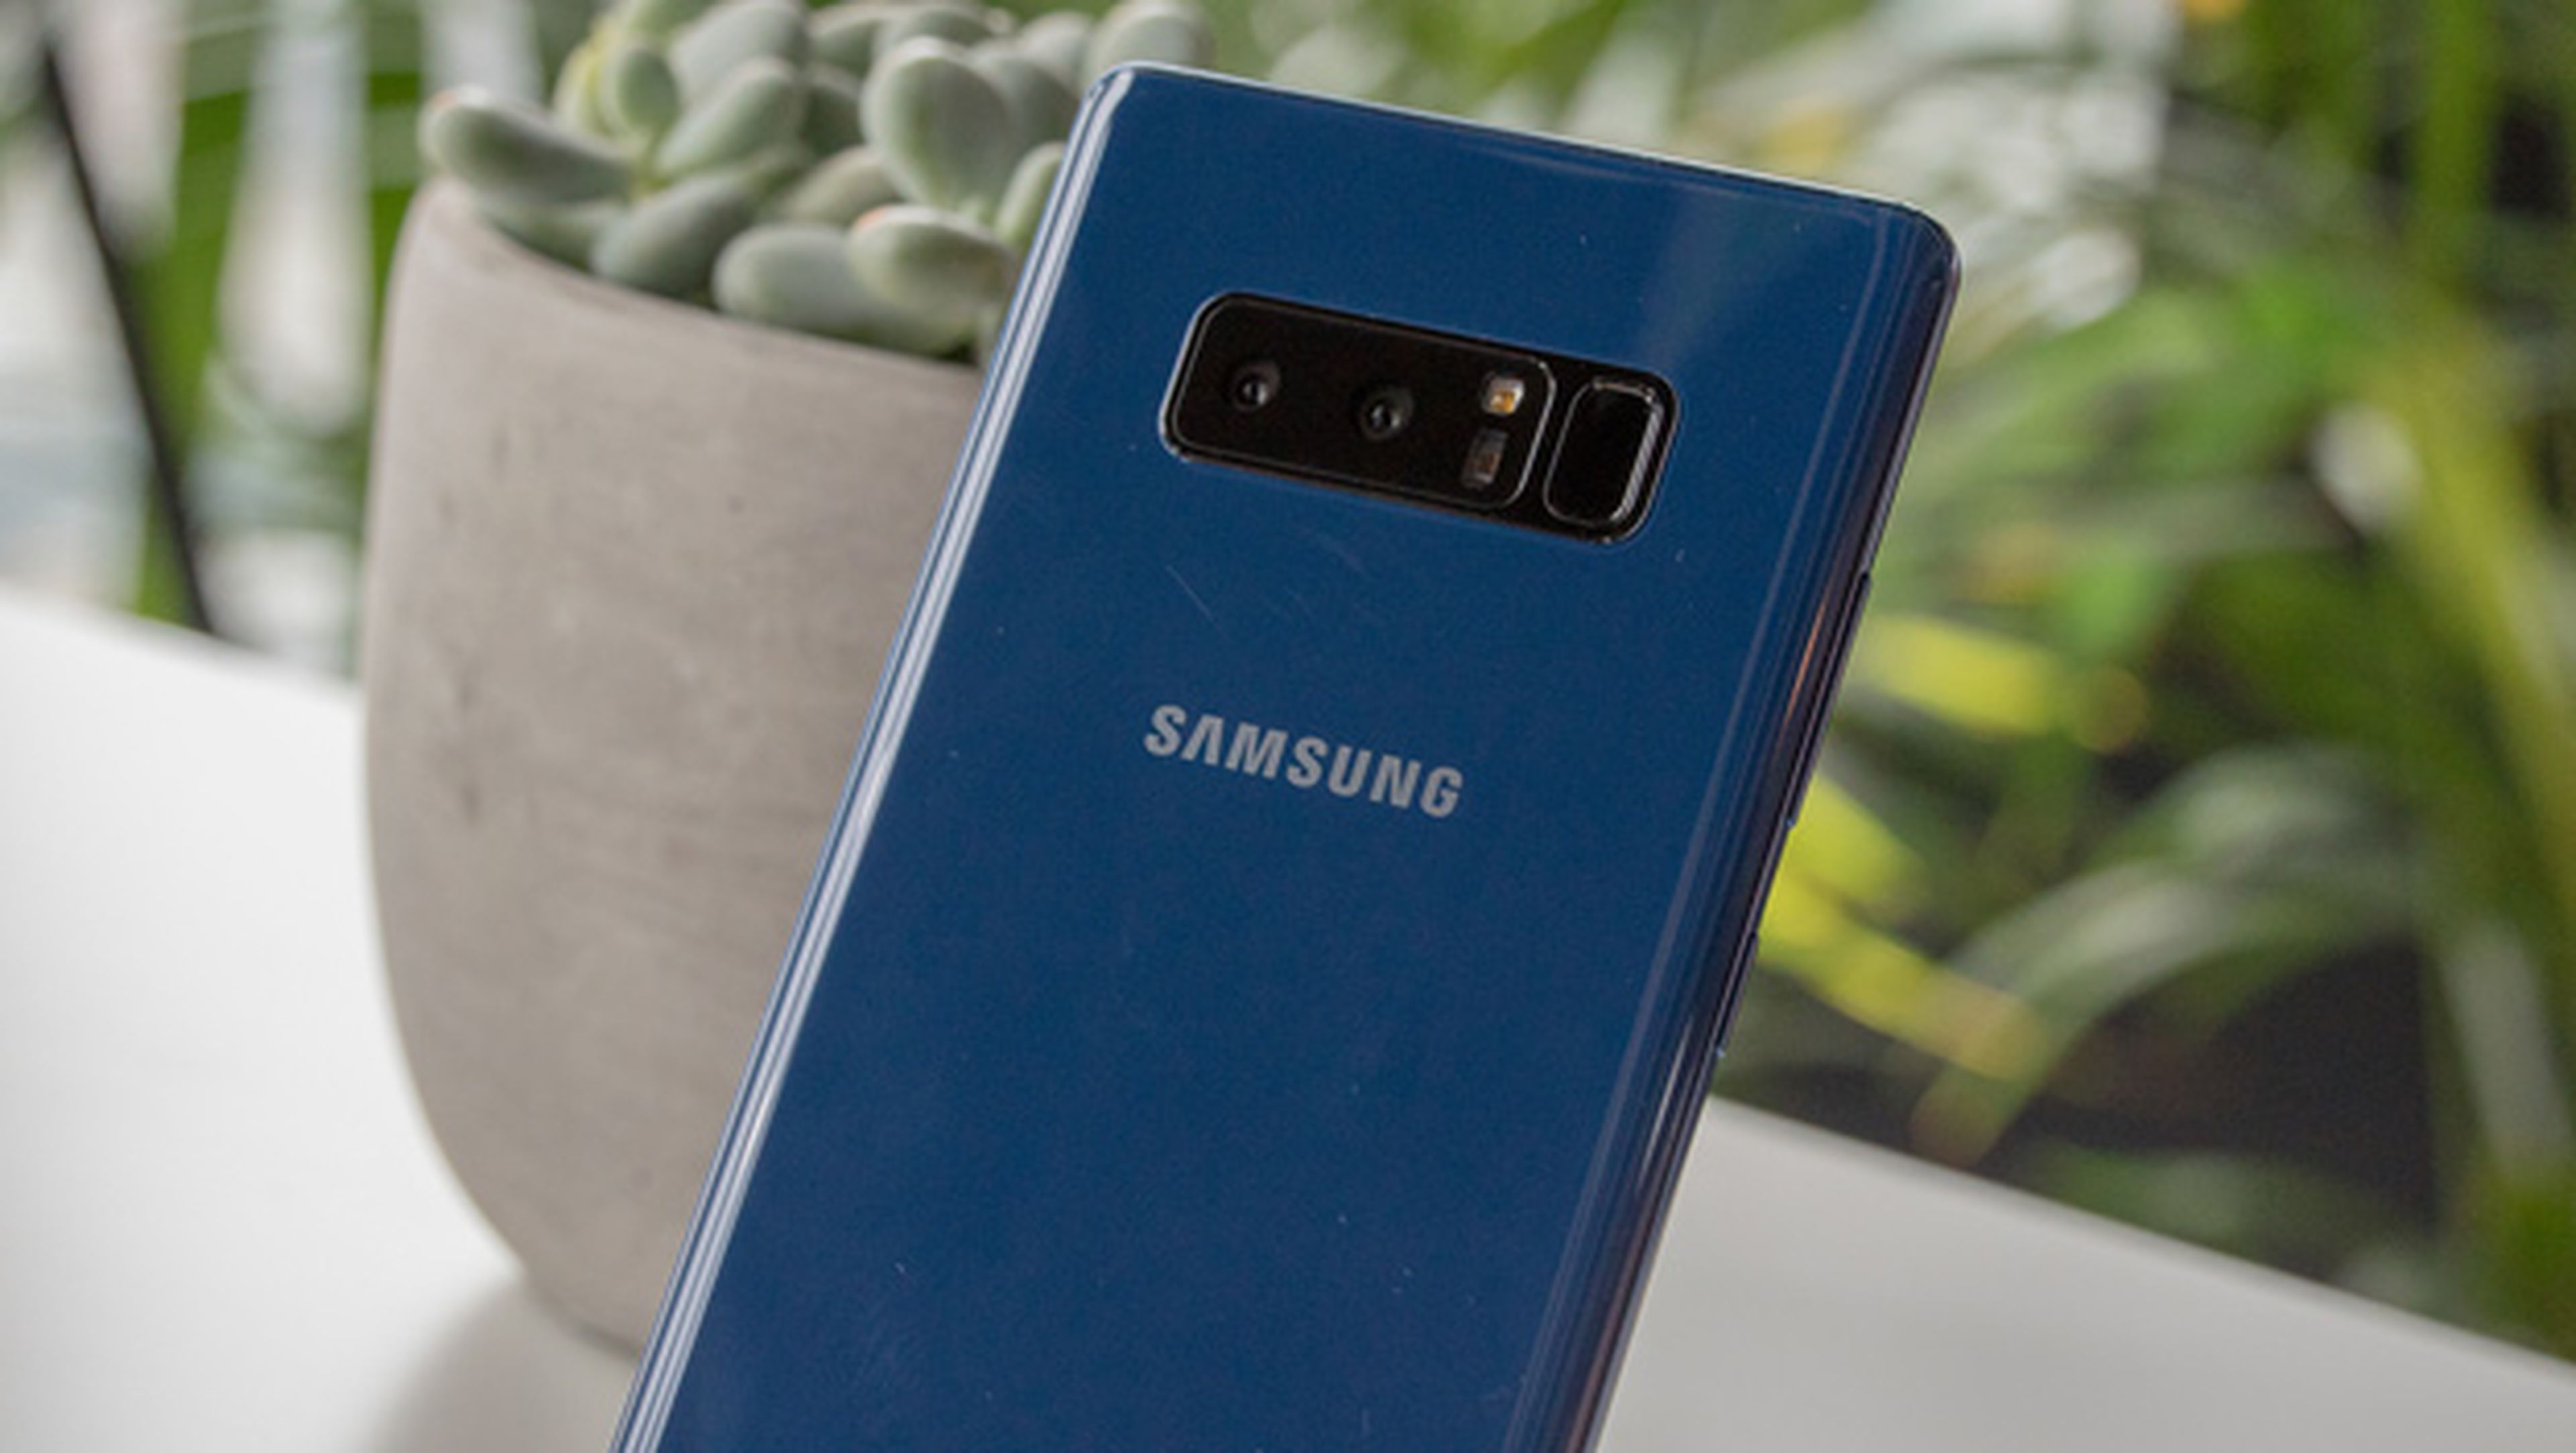 Unboxing del Samsung Galaxy Note 8 en vídeo